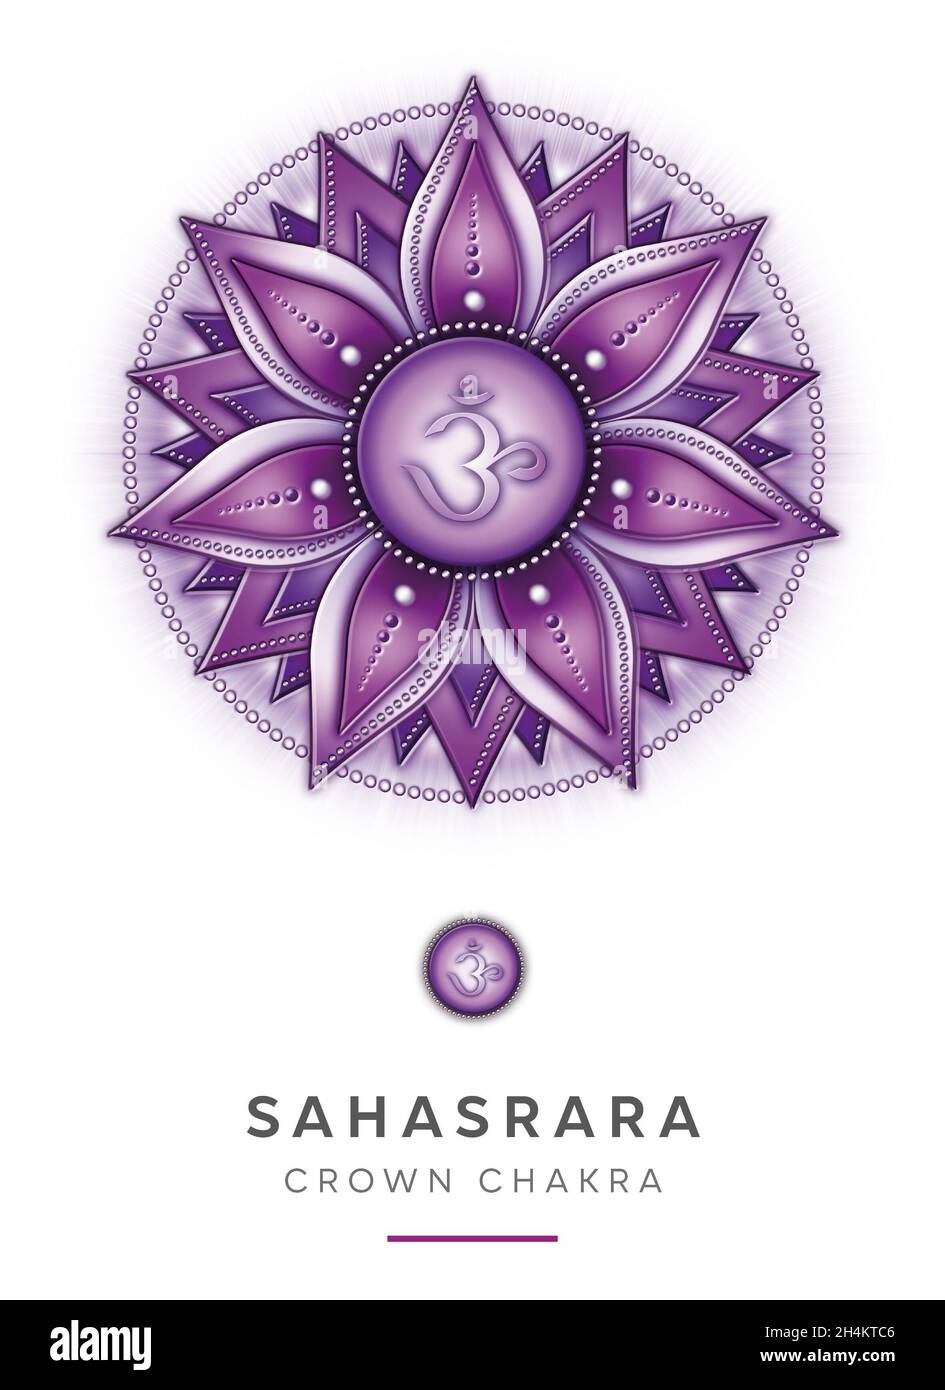 Chakra symboles, couronne chakra - SAHASRARA - connaissance, conscience, réalisation, spiritualité - 'Je COMPRENDS' Banque D'Images